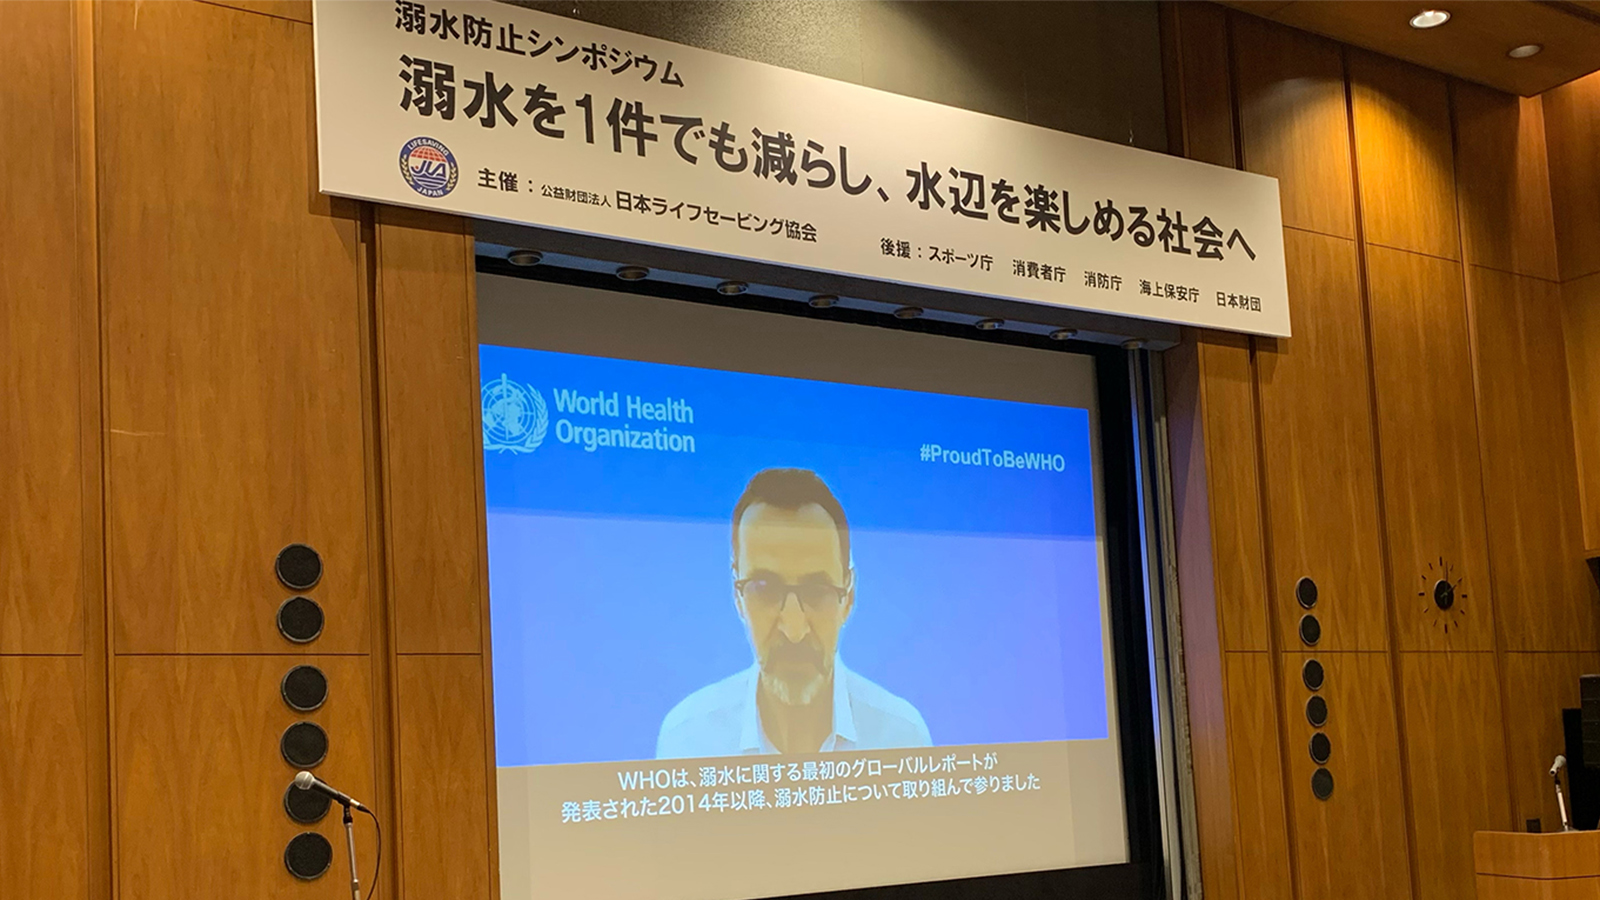 WHOのデビッド・メディングス博士からビデオ・メッセージが寄せられた（写真提供：日本ライフセービング協会）。